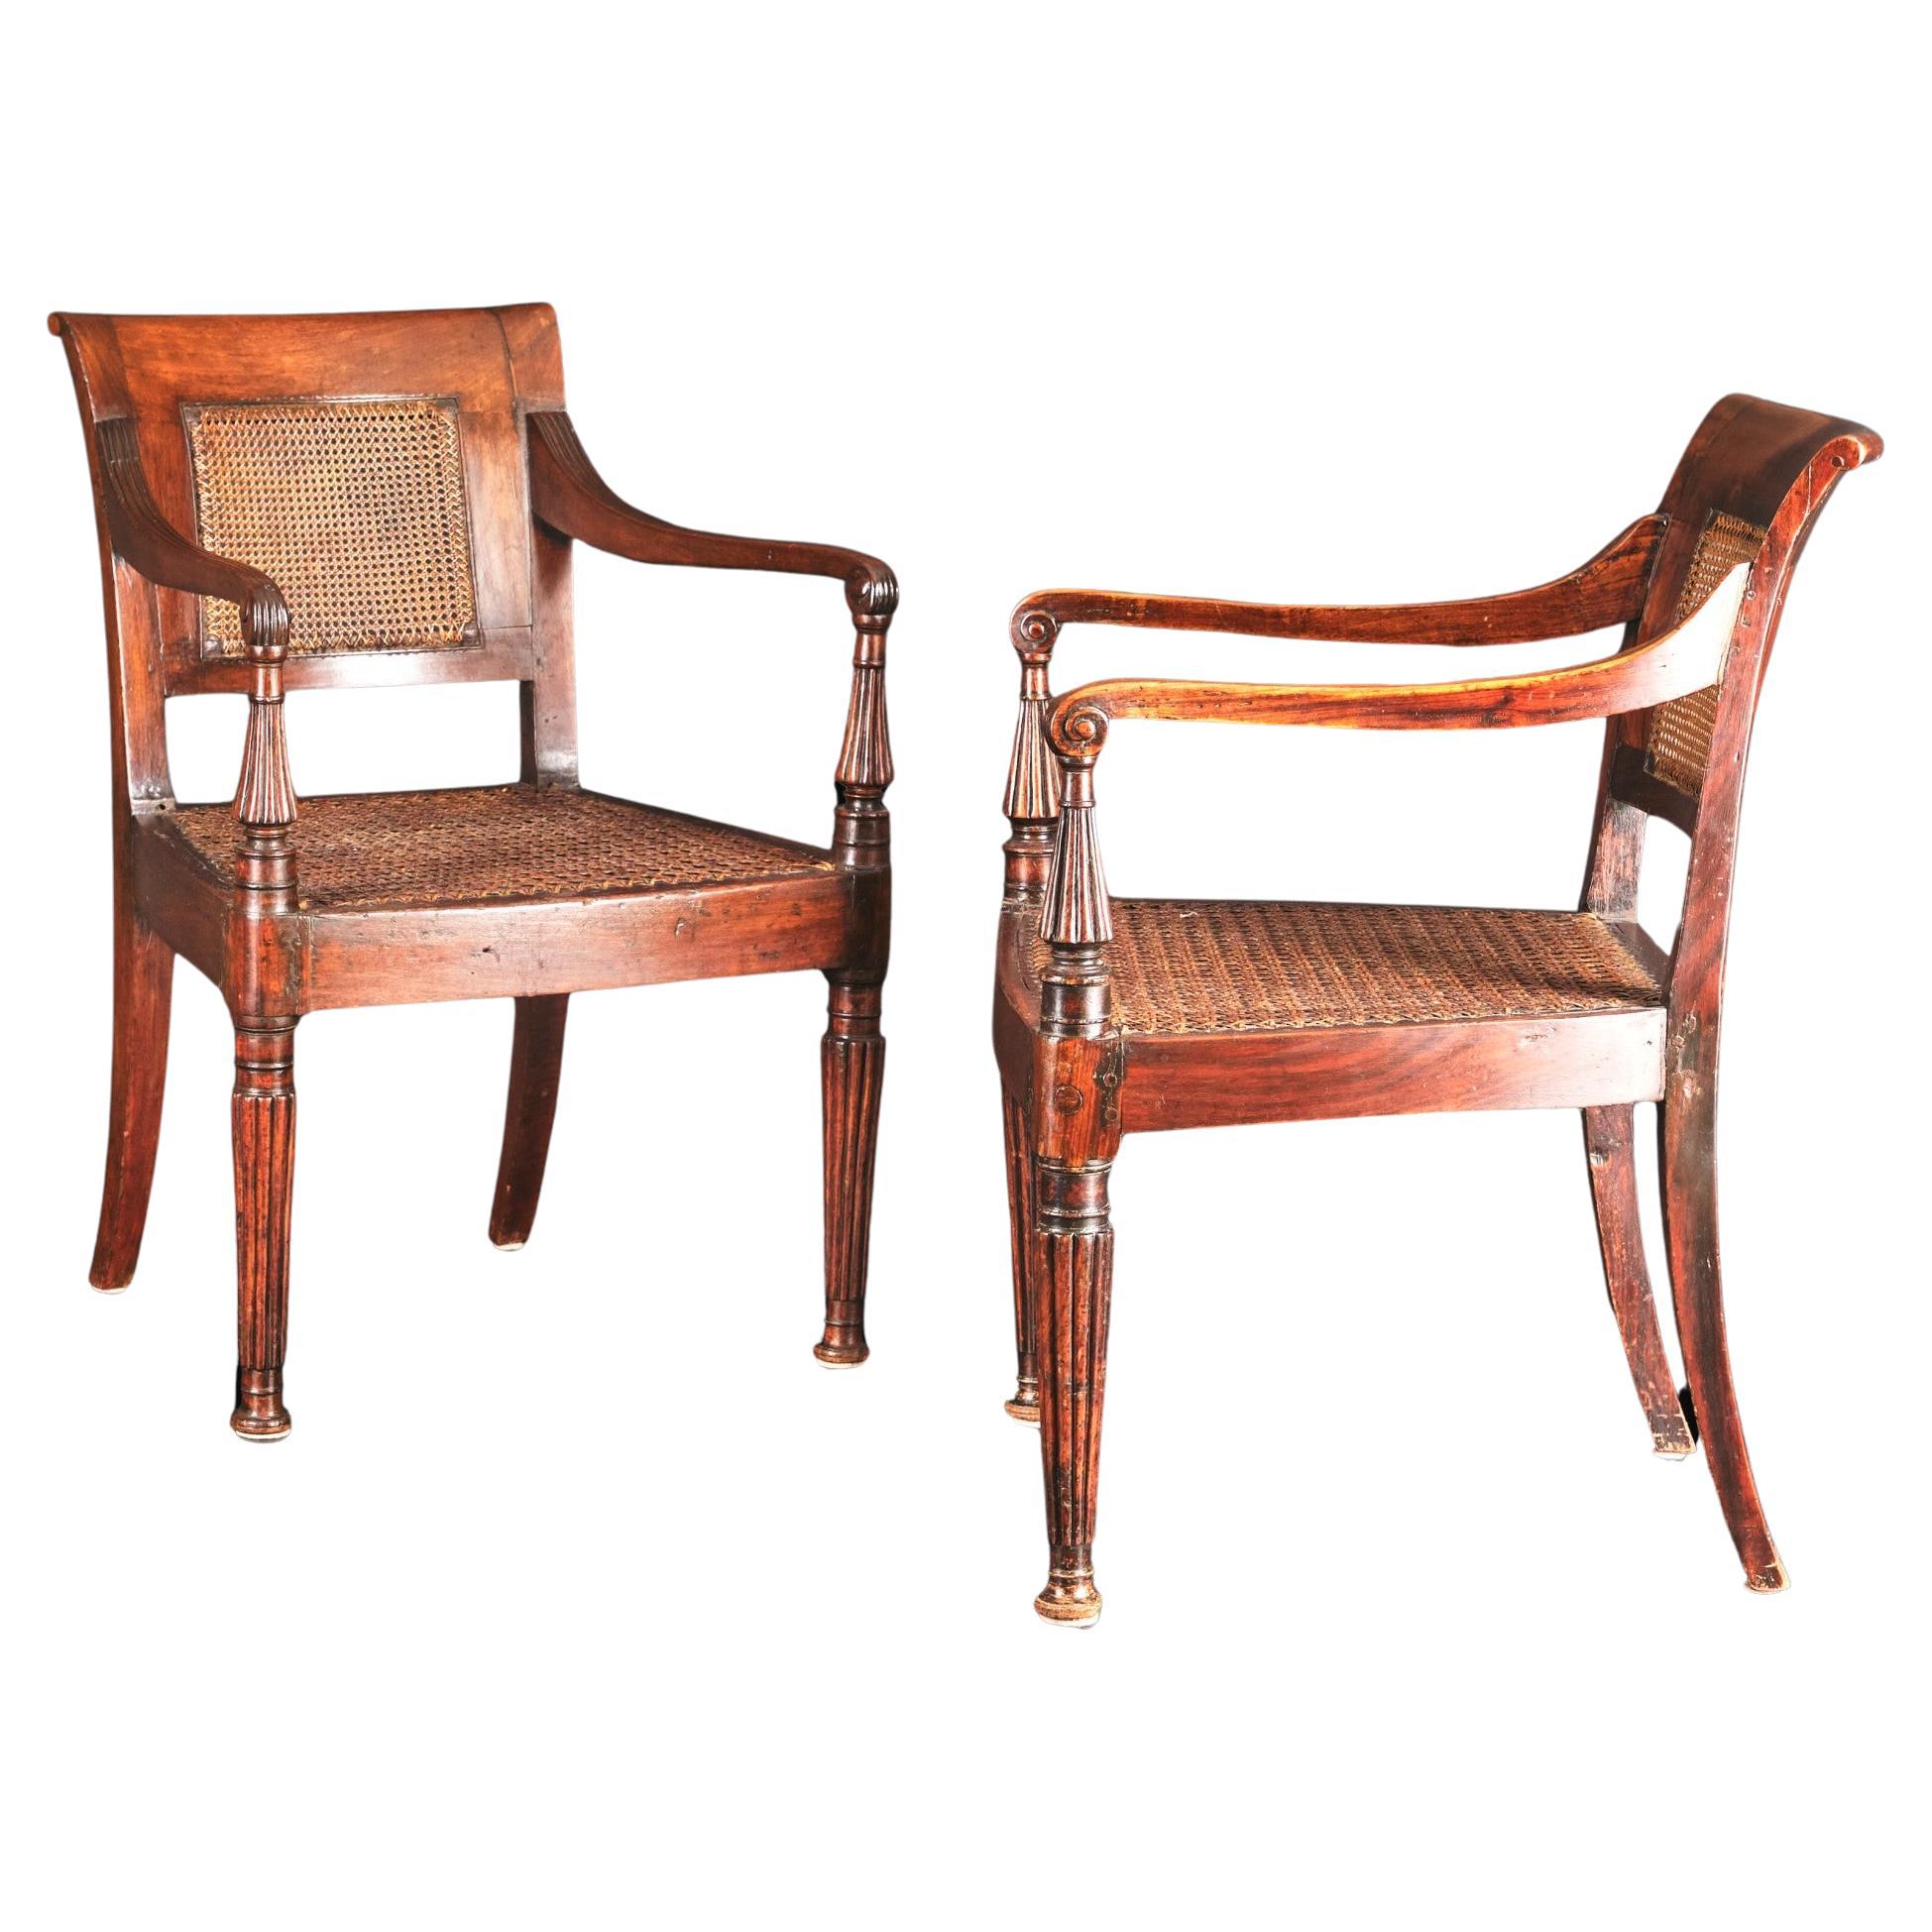 Belle paire de fauteuils anglo-indiens en bois de padouk du 19ème siècle, vers 1830